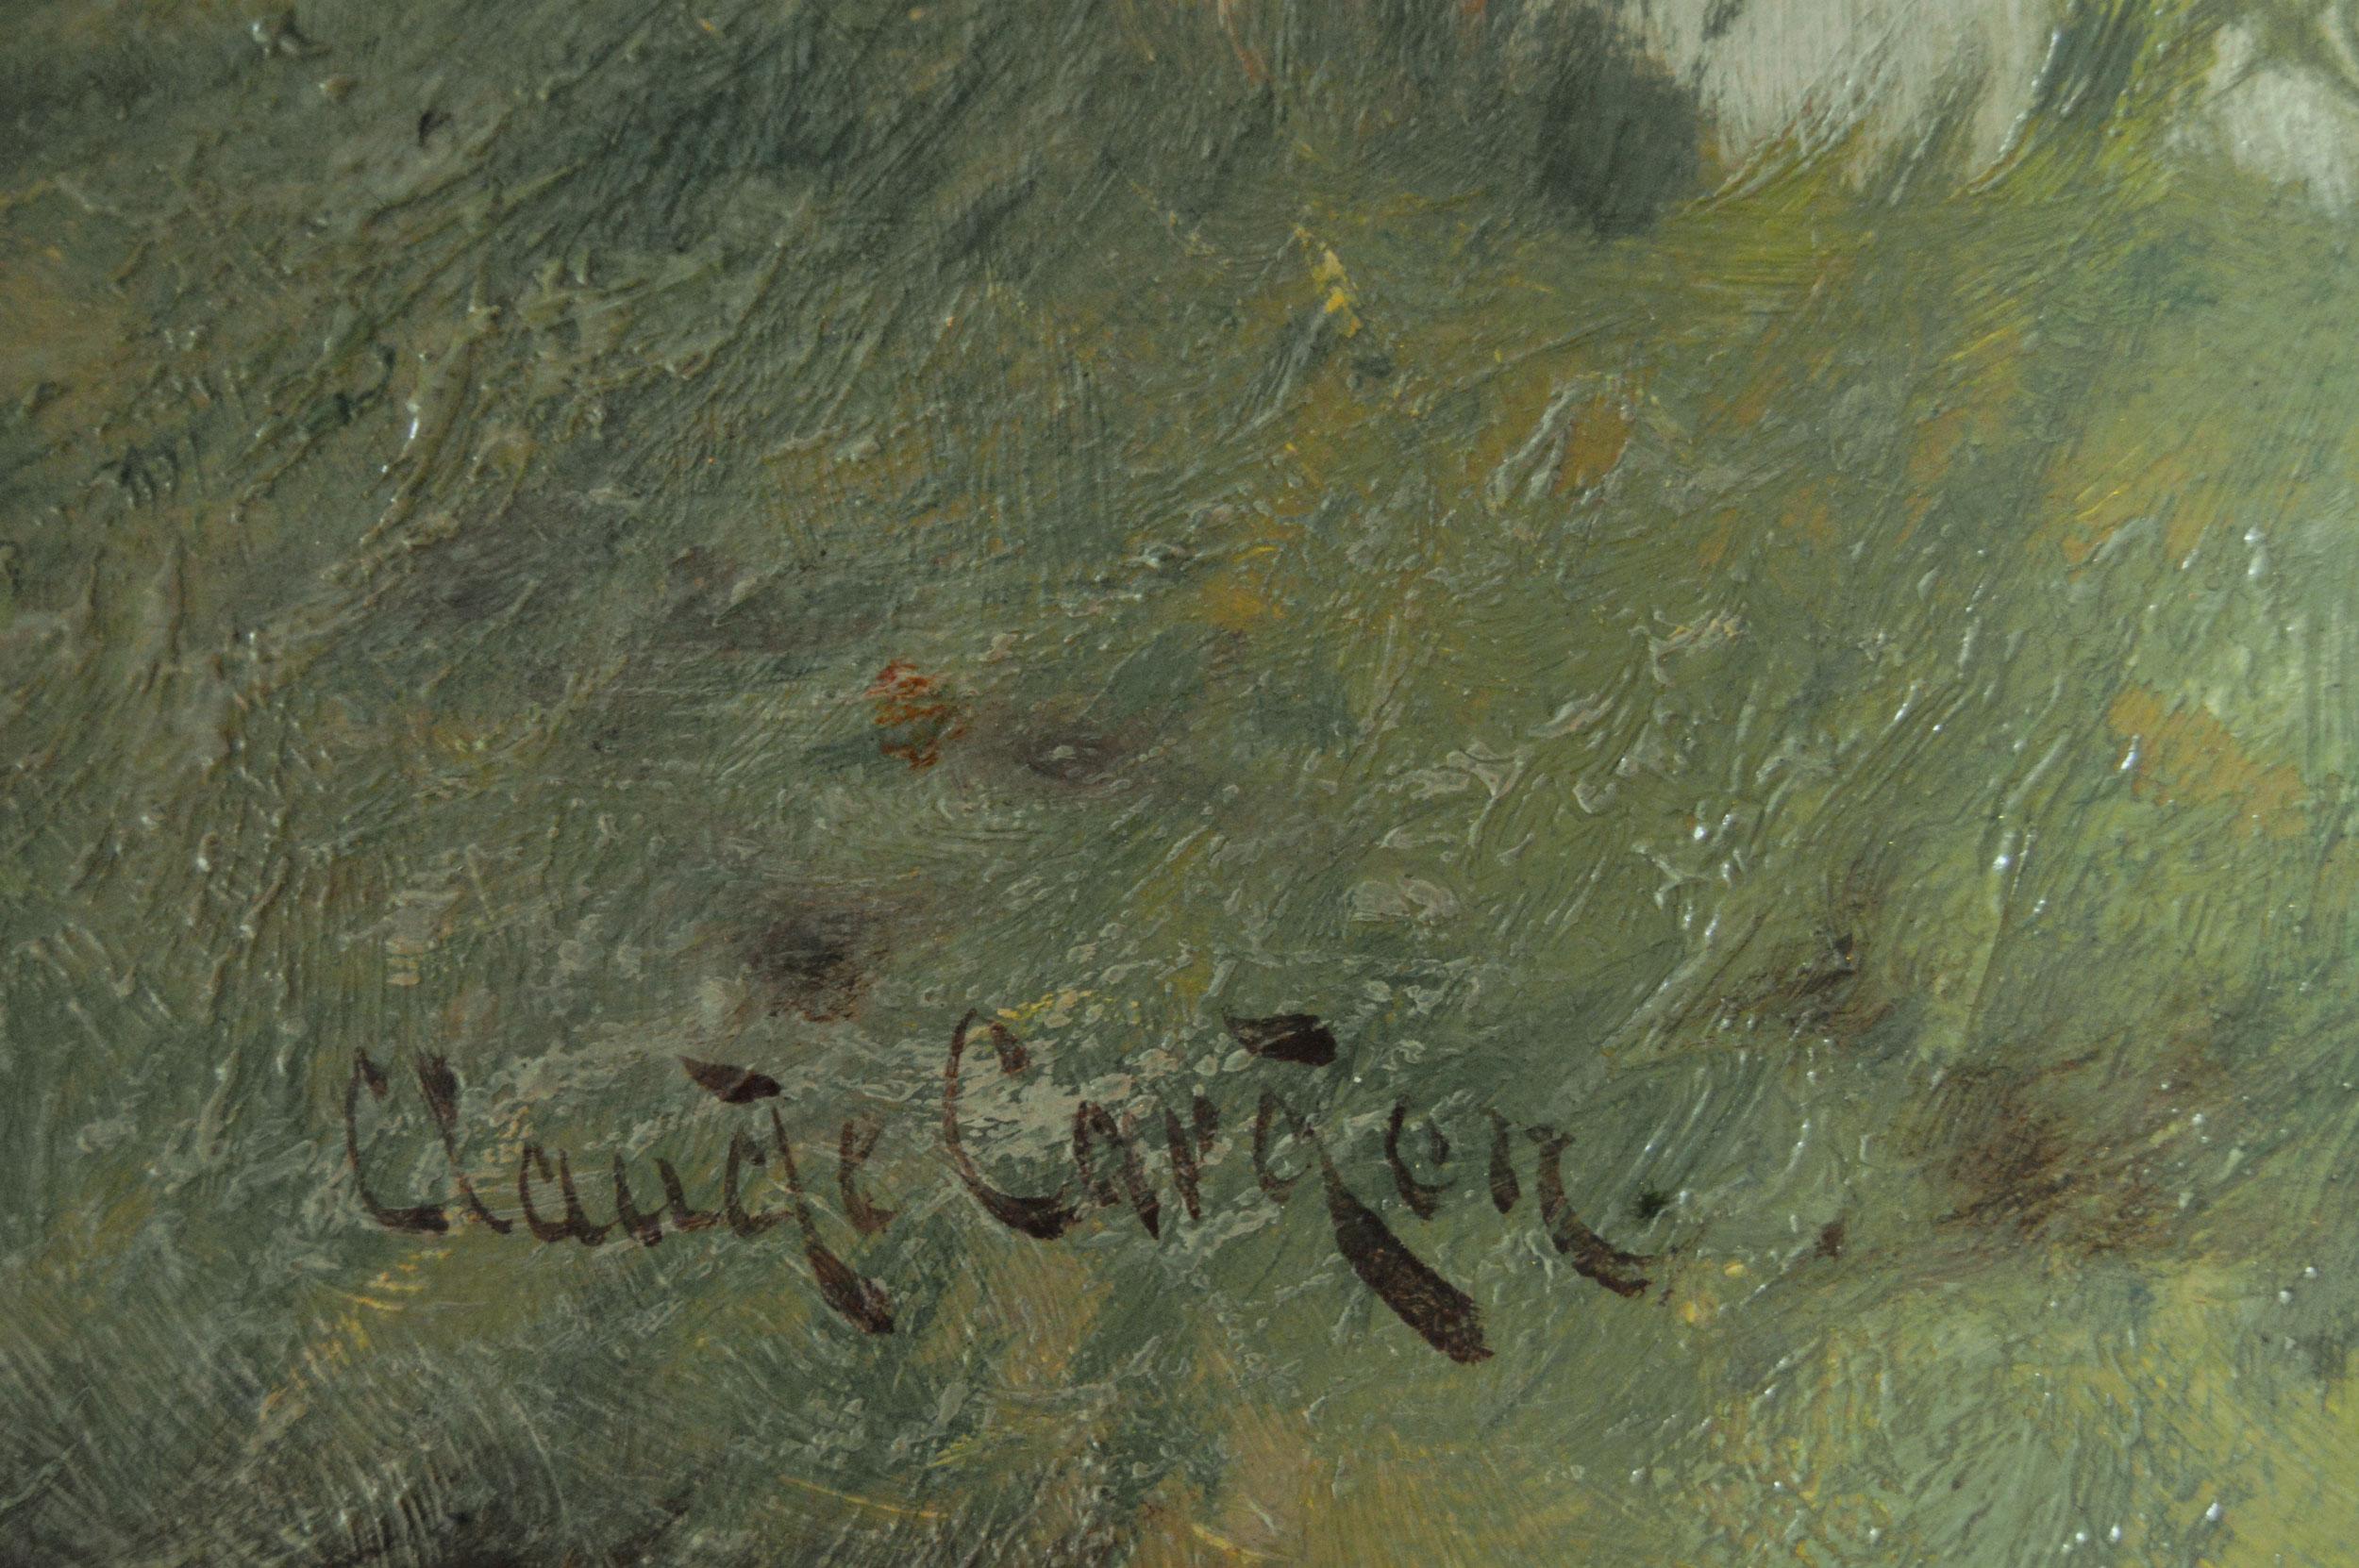 Claude Cardon
Britannique, (1864-1937)
Au bord de la rivière
Huile sur toile, signée
Taille de l'image : 13.25 pouces x 20.25 pouces 
Dimensions, y compris le cadre : 17.75 pouces x 24.75 pouces

Une scène printanière tranquille de moutons et